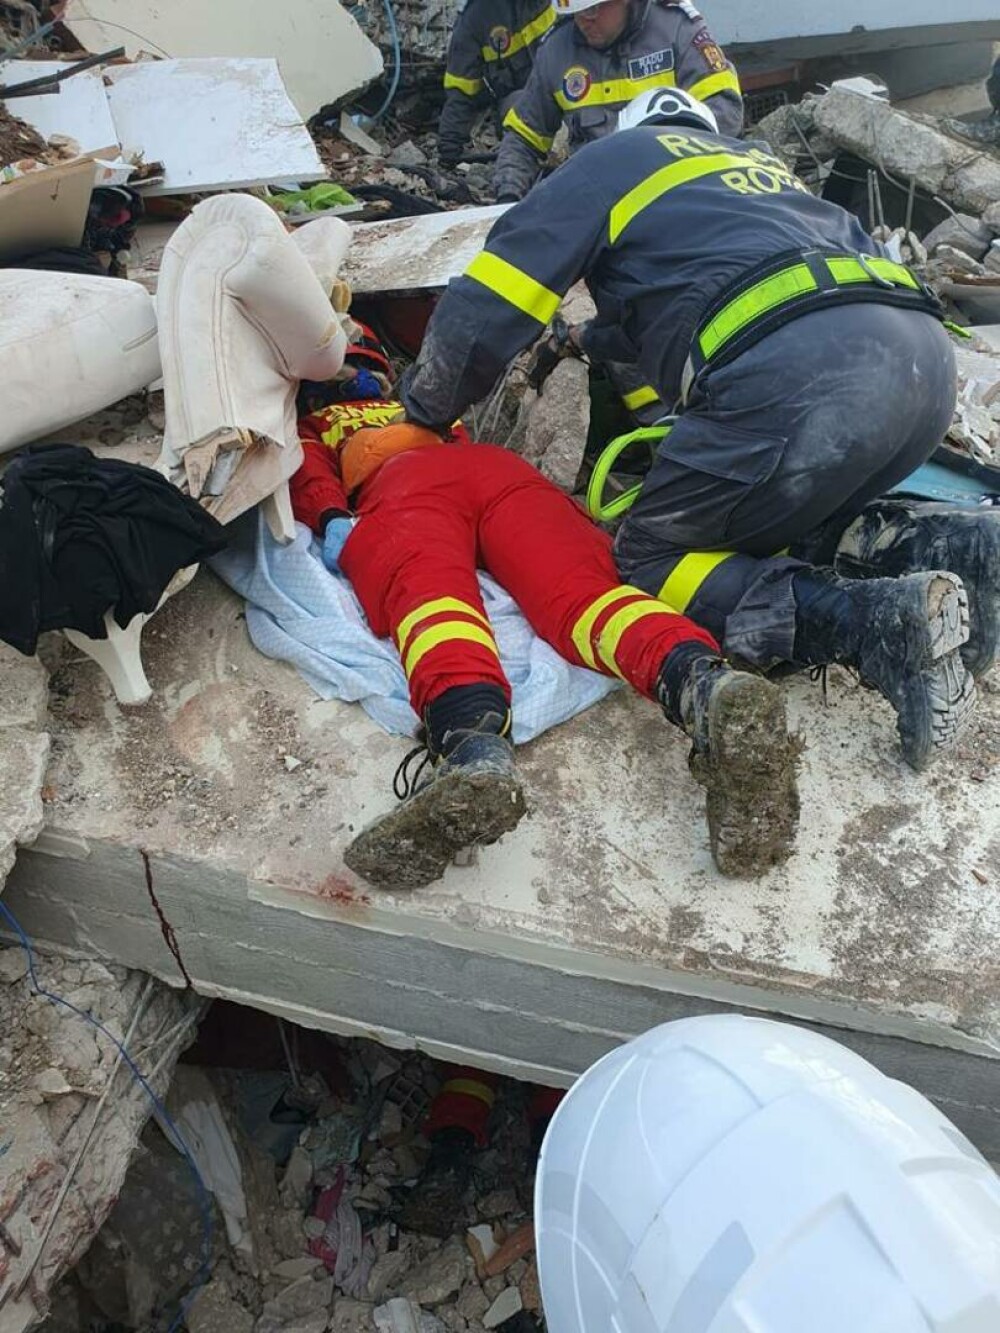 Imagini dramatice surprinse în Turcia. Momentul în care salvatorii români scot de sub dărâmături o familie | GALERIE FOTO - Imaginea 2